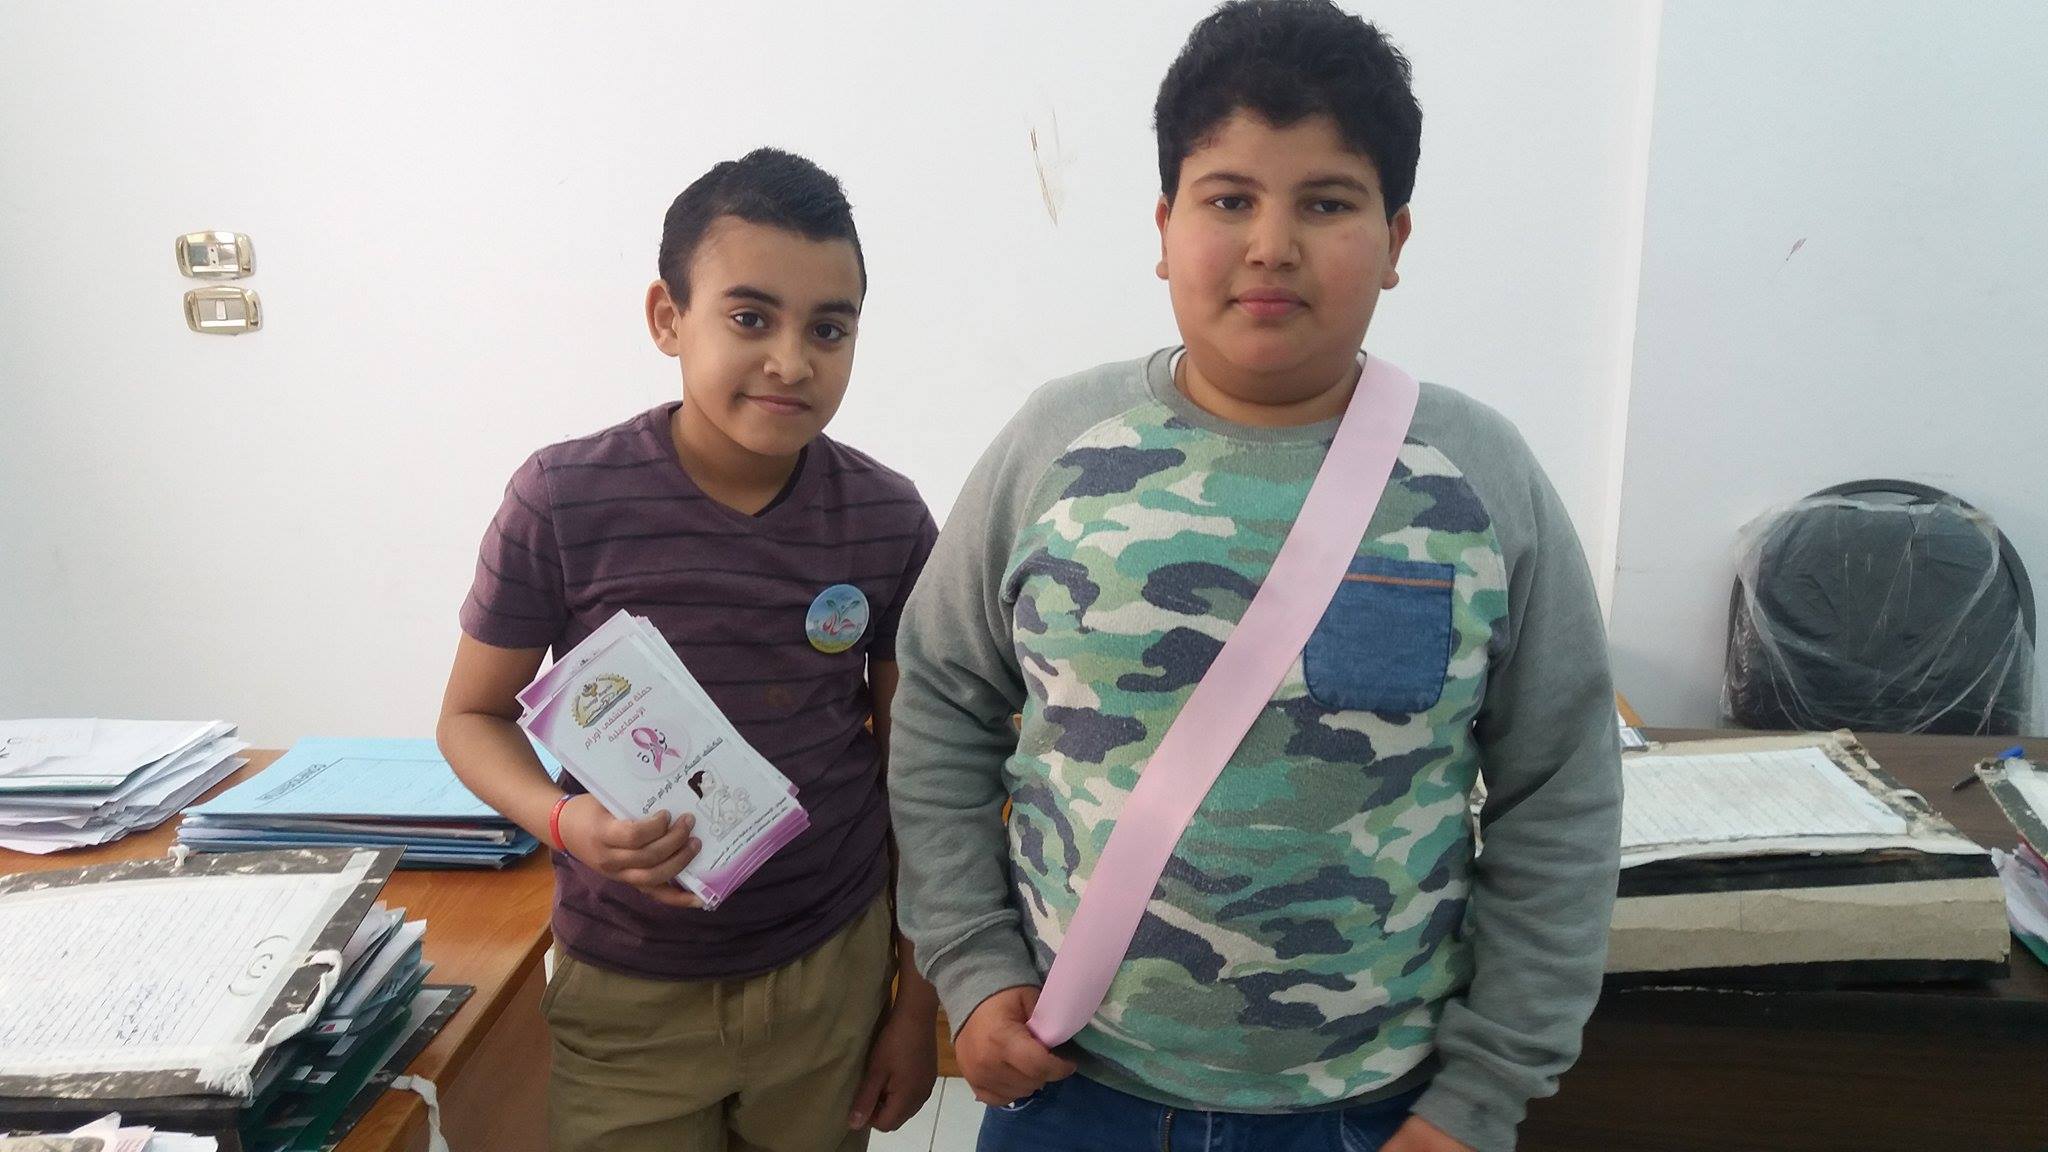 حصرى بالصور ” ل رصد الوطن ” جيل مصر الصغير يساهم فى حملة نوارة للكشف المبكر على سرطان الثدى